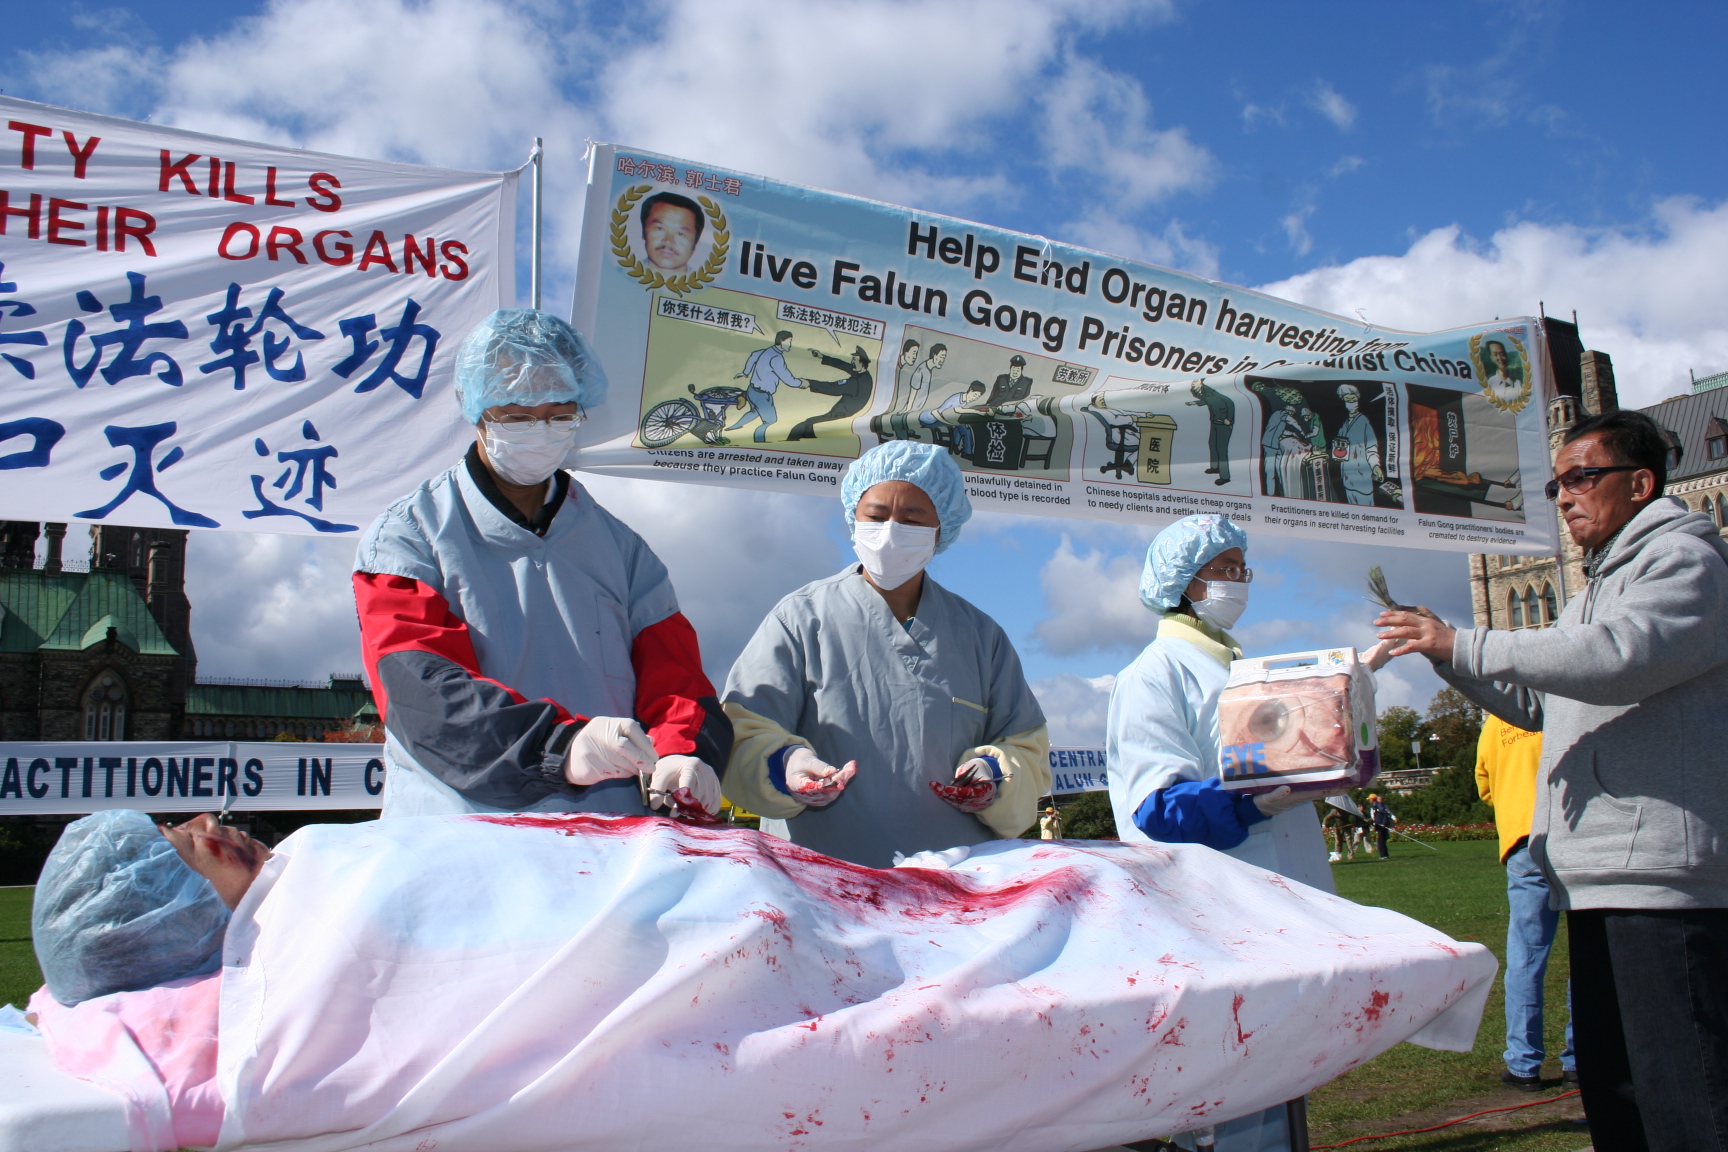 Une reconstitution des prélèvements forcés d’organes en Chine sur les pratiquants de Falun Gong, lors d’un rassemblement à Ottawa au Canada, en 2008. (Epoch Times)